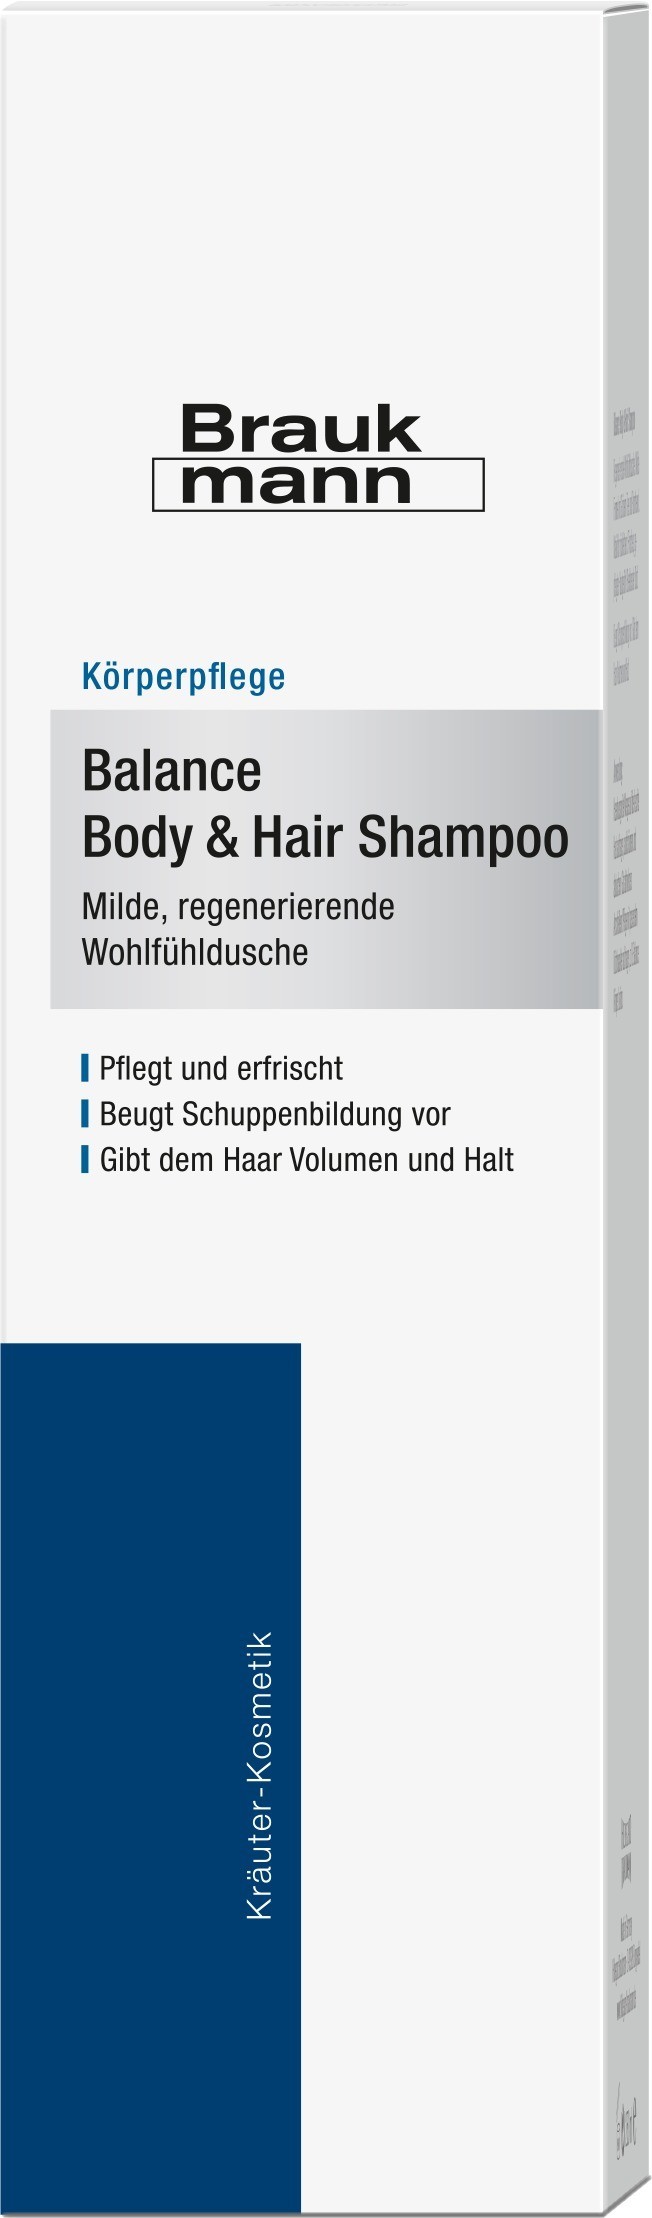 braukmann-balance-body-hair-shampoo